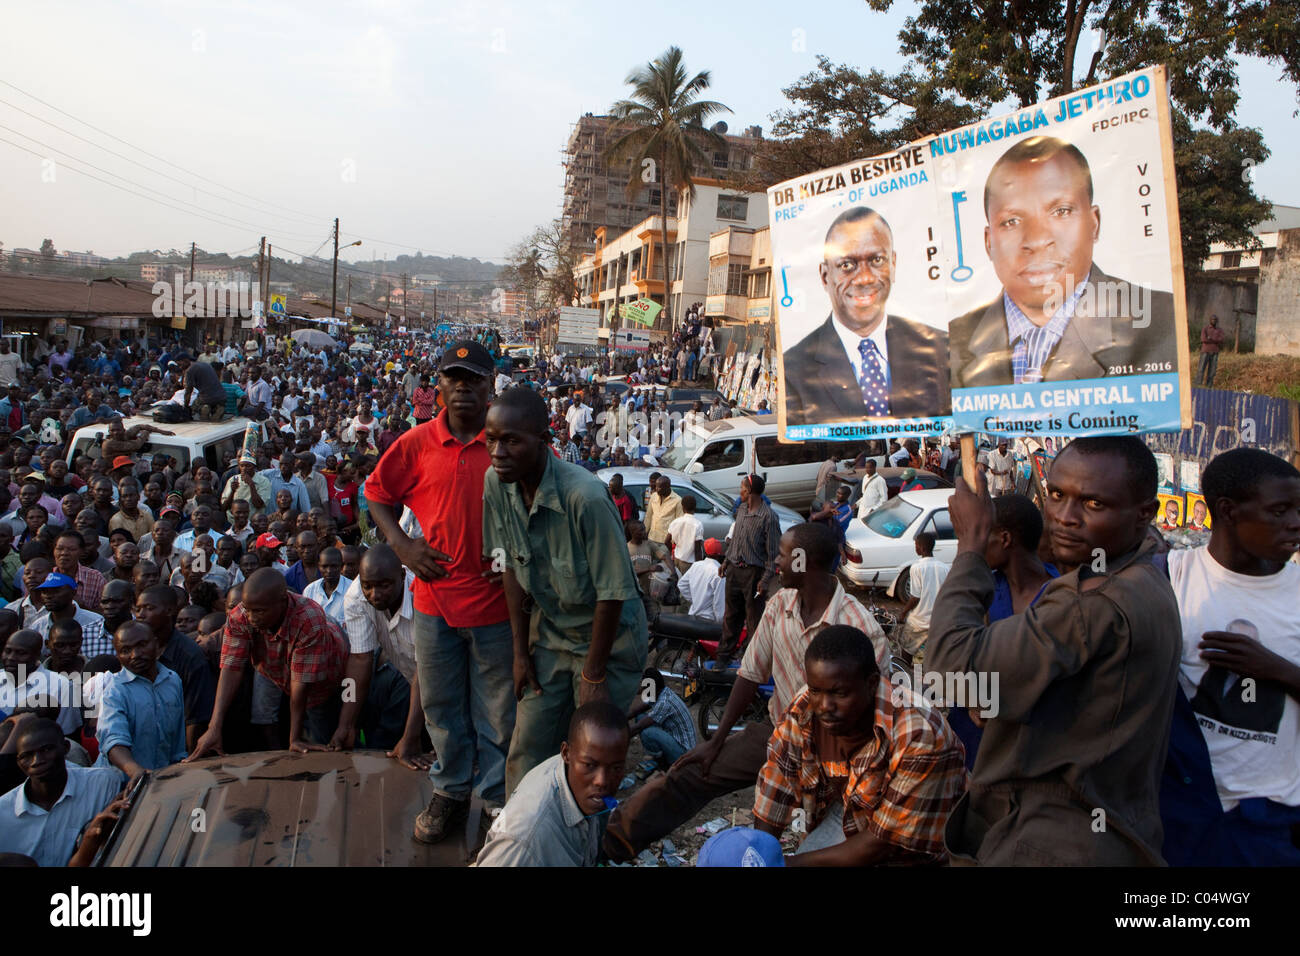 Les partisans du candidat à la présidence de l'Ouganda Le Dr Kizza Besigye emplissent les rues de Kampala comme il l'avance sur les campagnes du vote de vendredi Banque D'Images